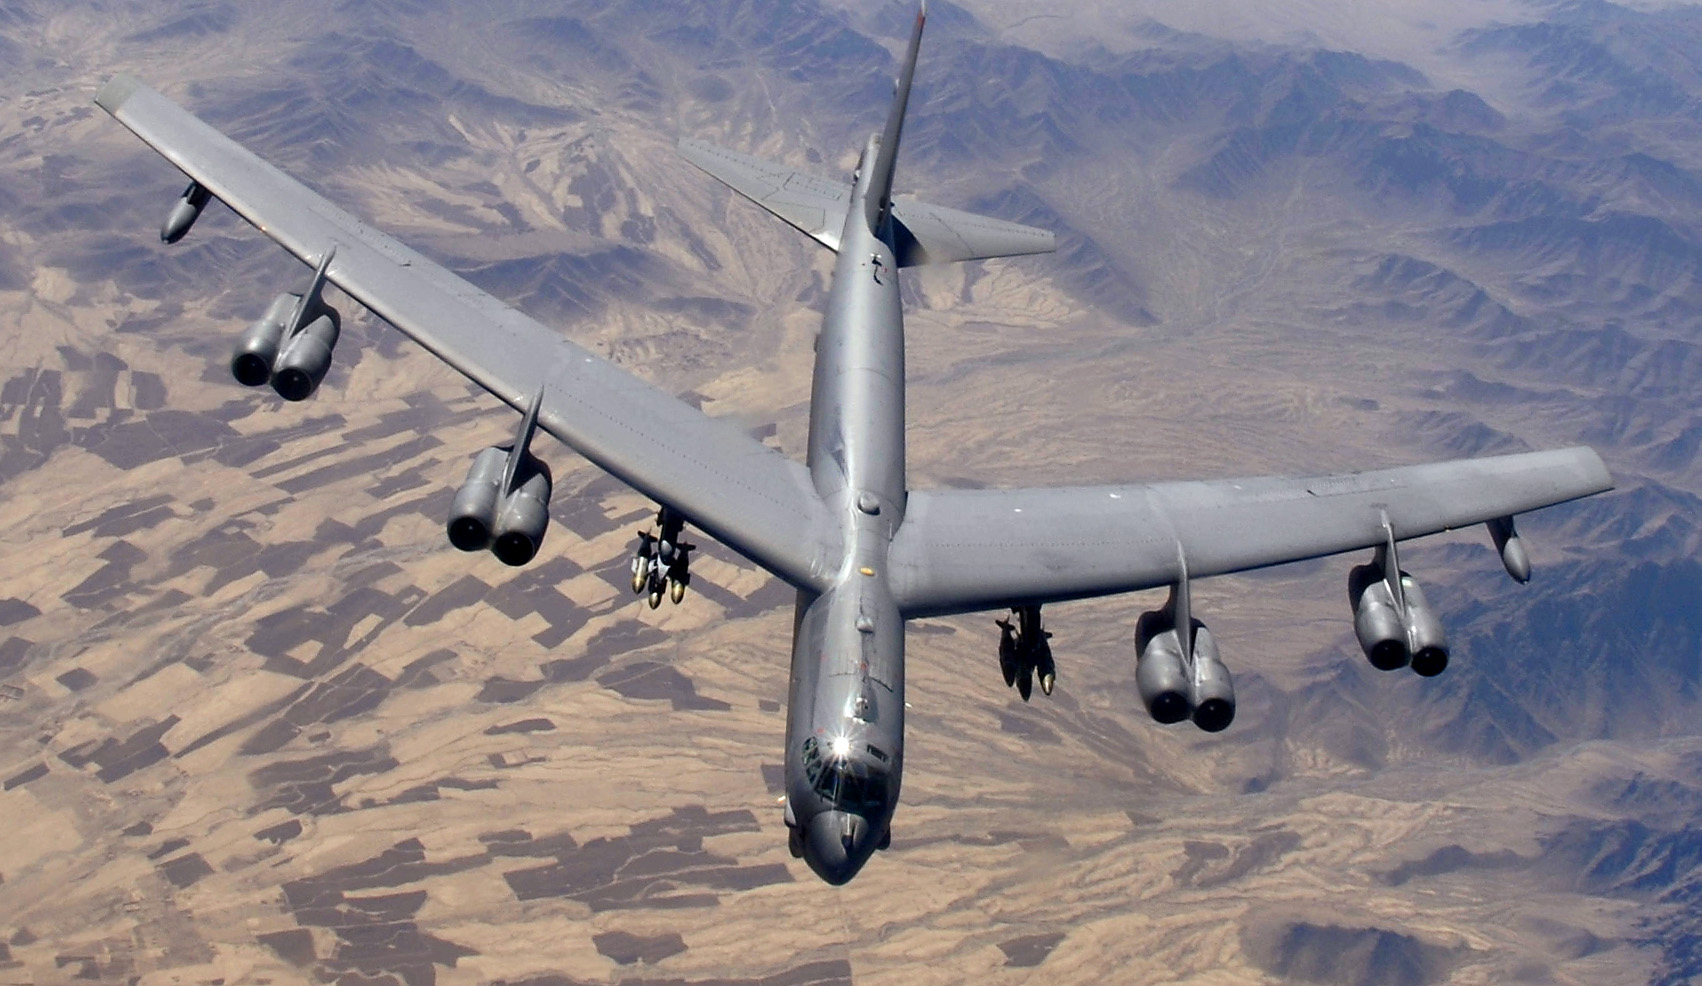 Стратегический бомбардировщик B-52H (США) над Афганистаном. 2006 год